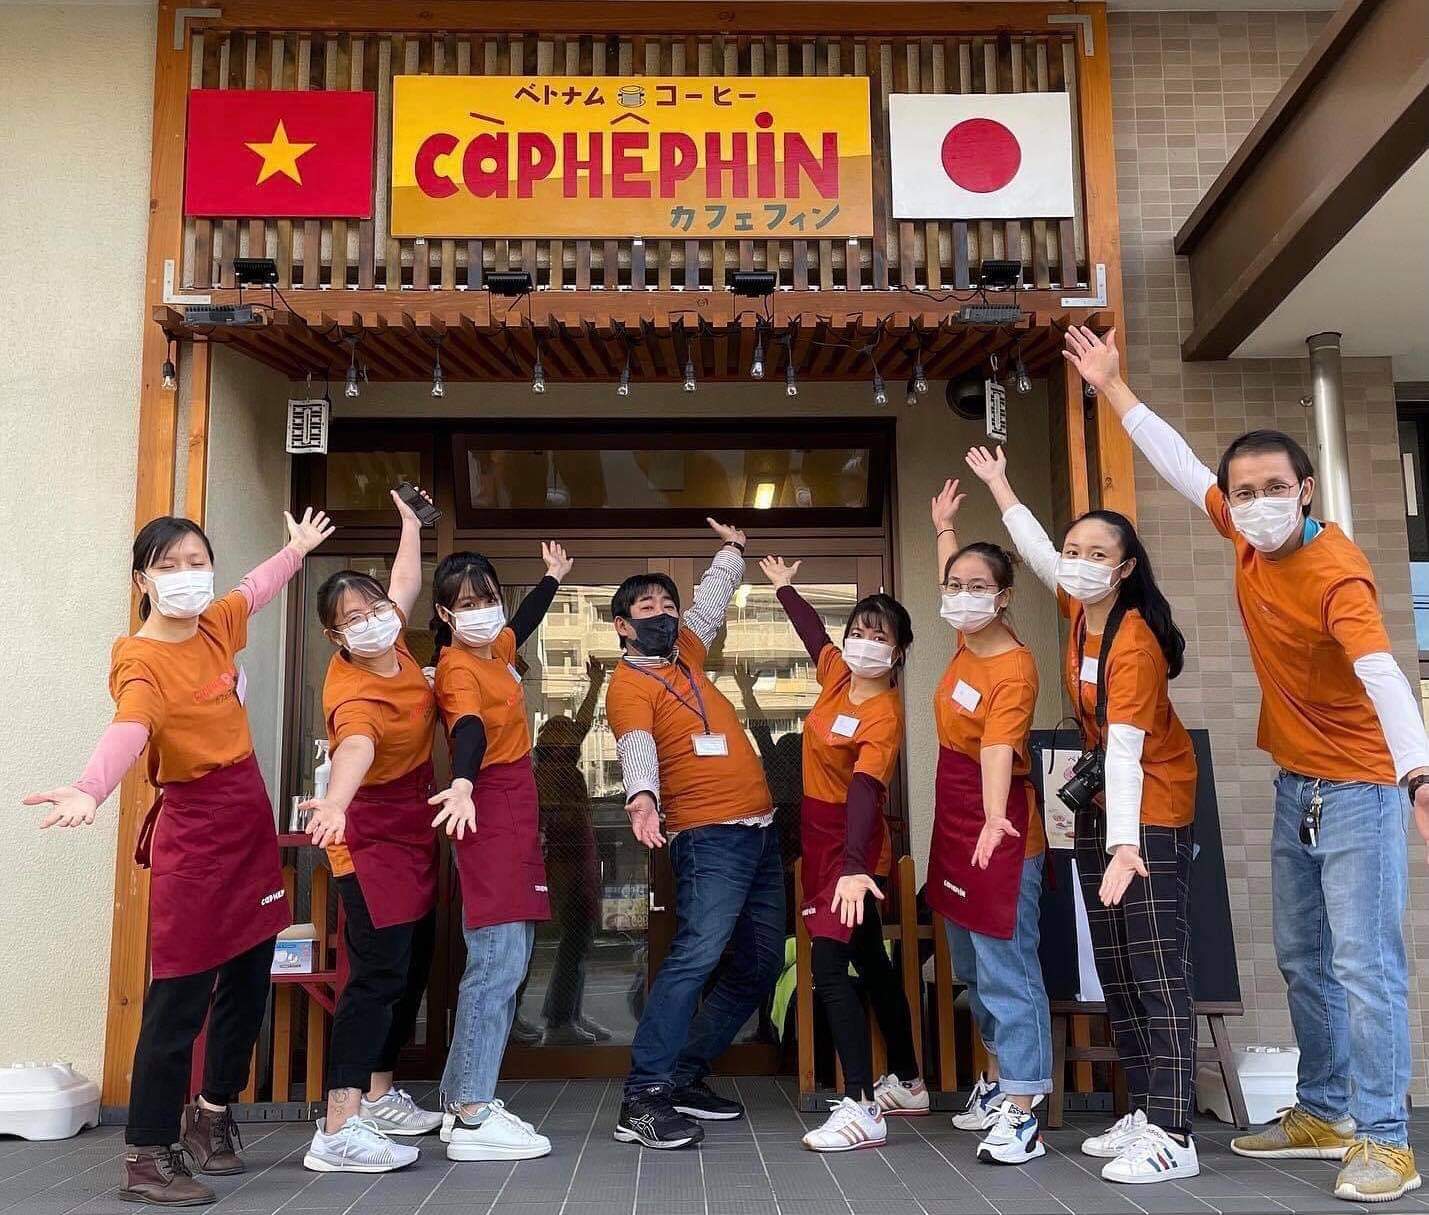 ベトナム人修了生が起業したベトナムカフェ専門店「Caphe phin」試食会が大盛況にて終了